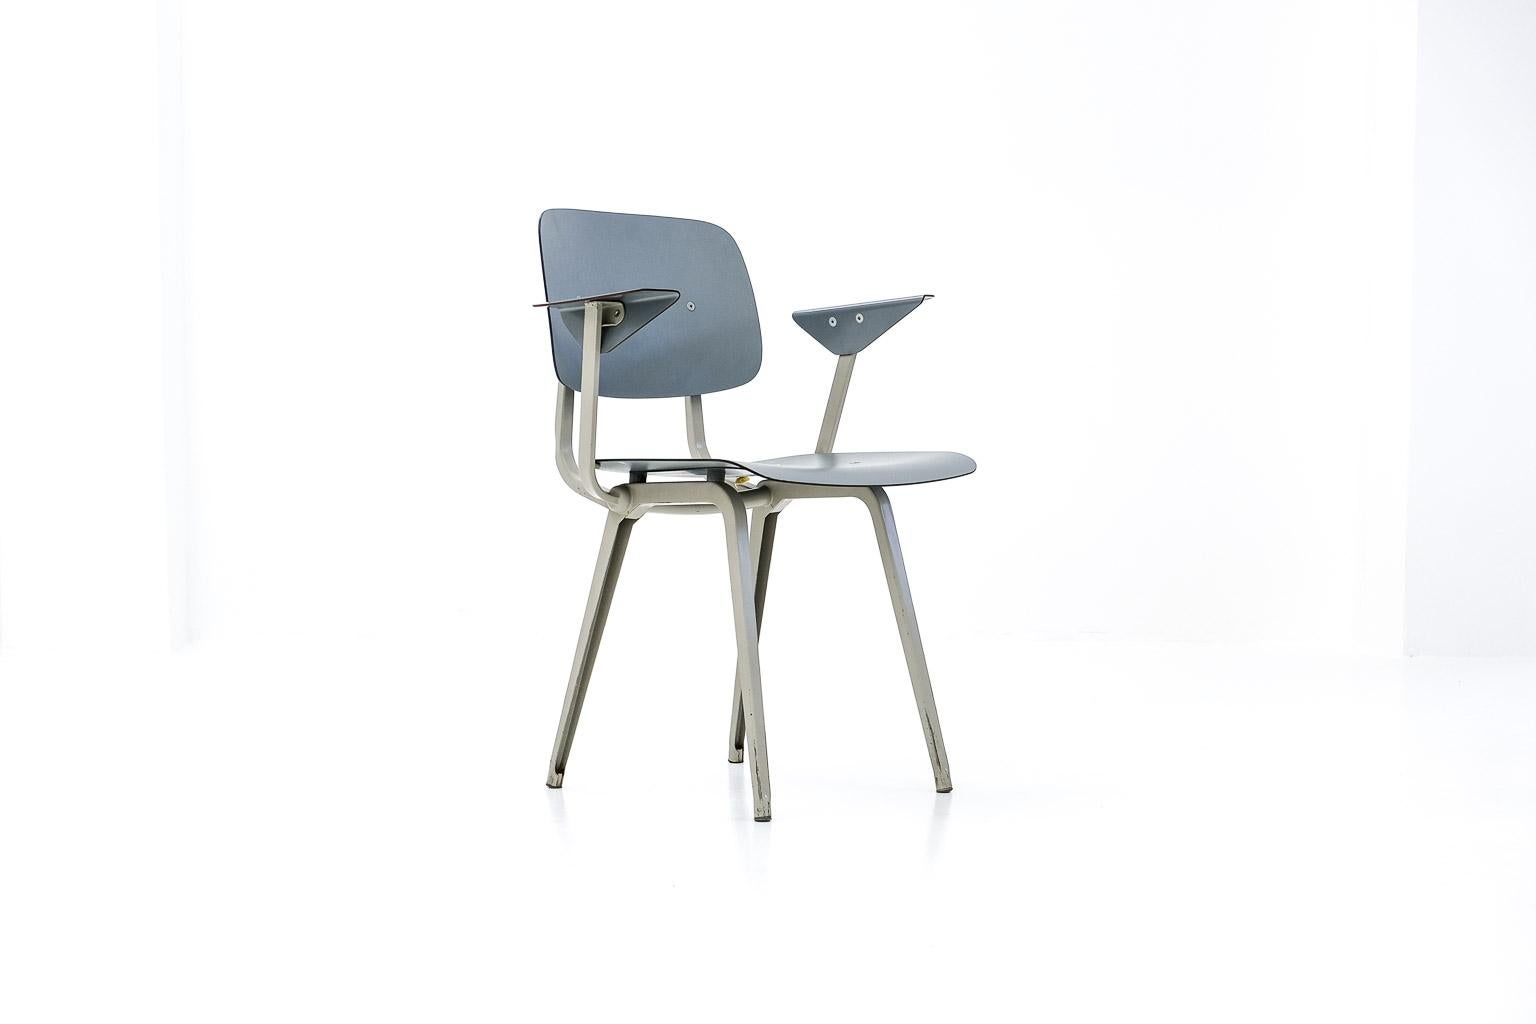 l'une de nos créations préférées est probablement la chaise la plus célèbre du designer néerlandais friso Kramer : la chaise 4060, appelée 